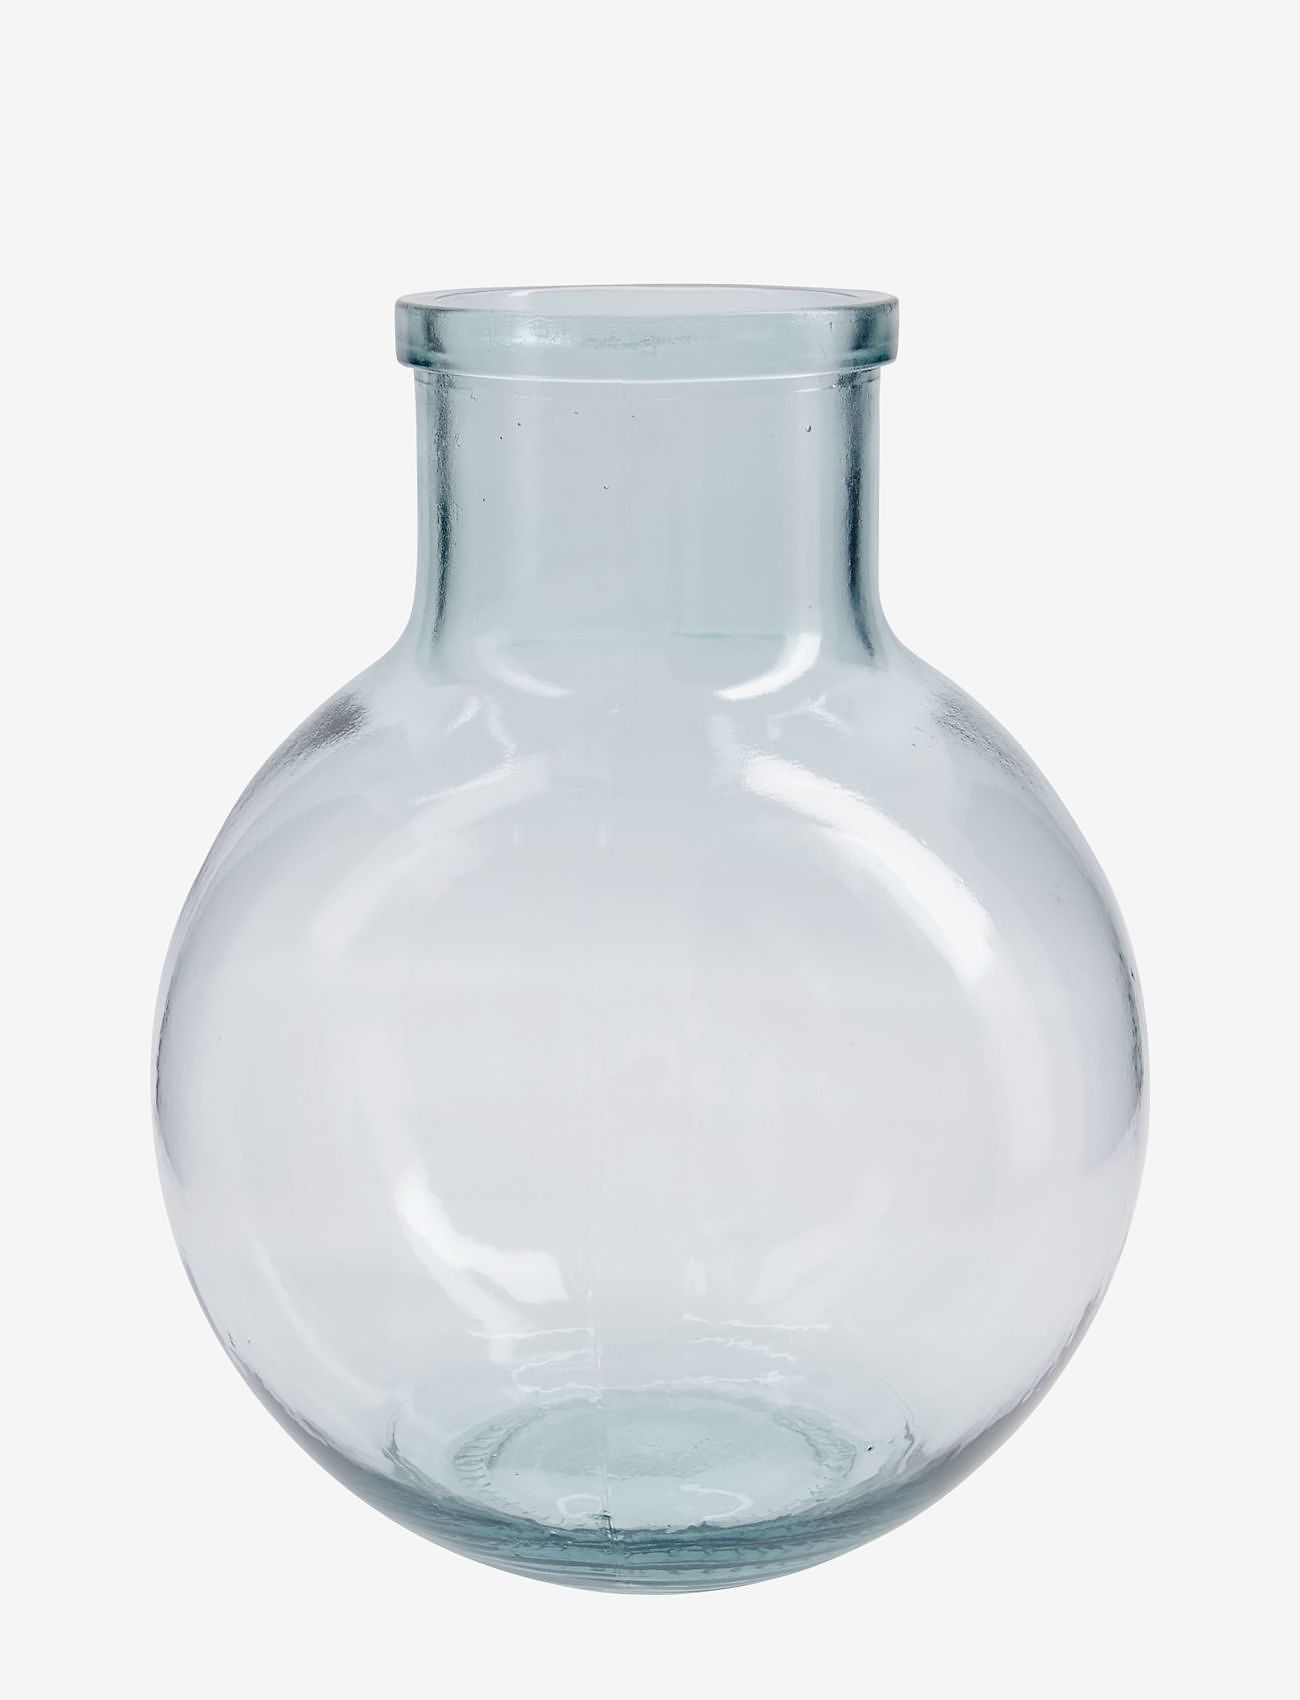 house doctor - Vase/Bottle, Aran - big vases - clear - 0